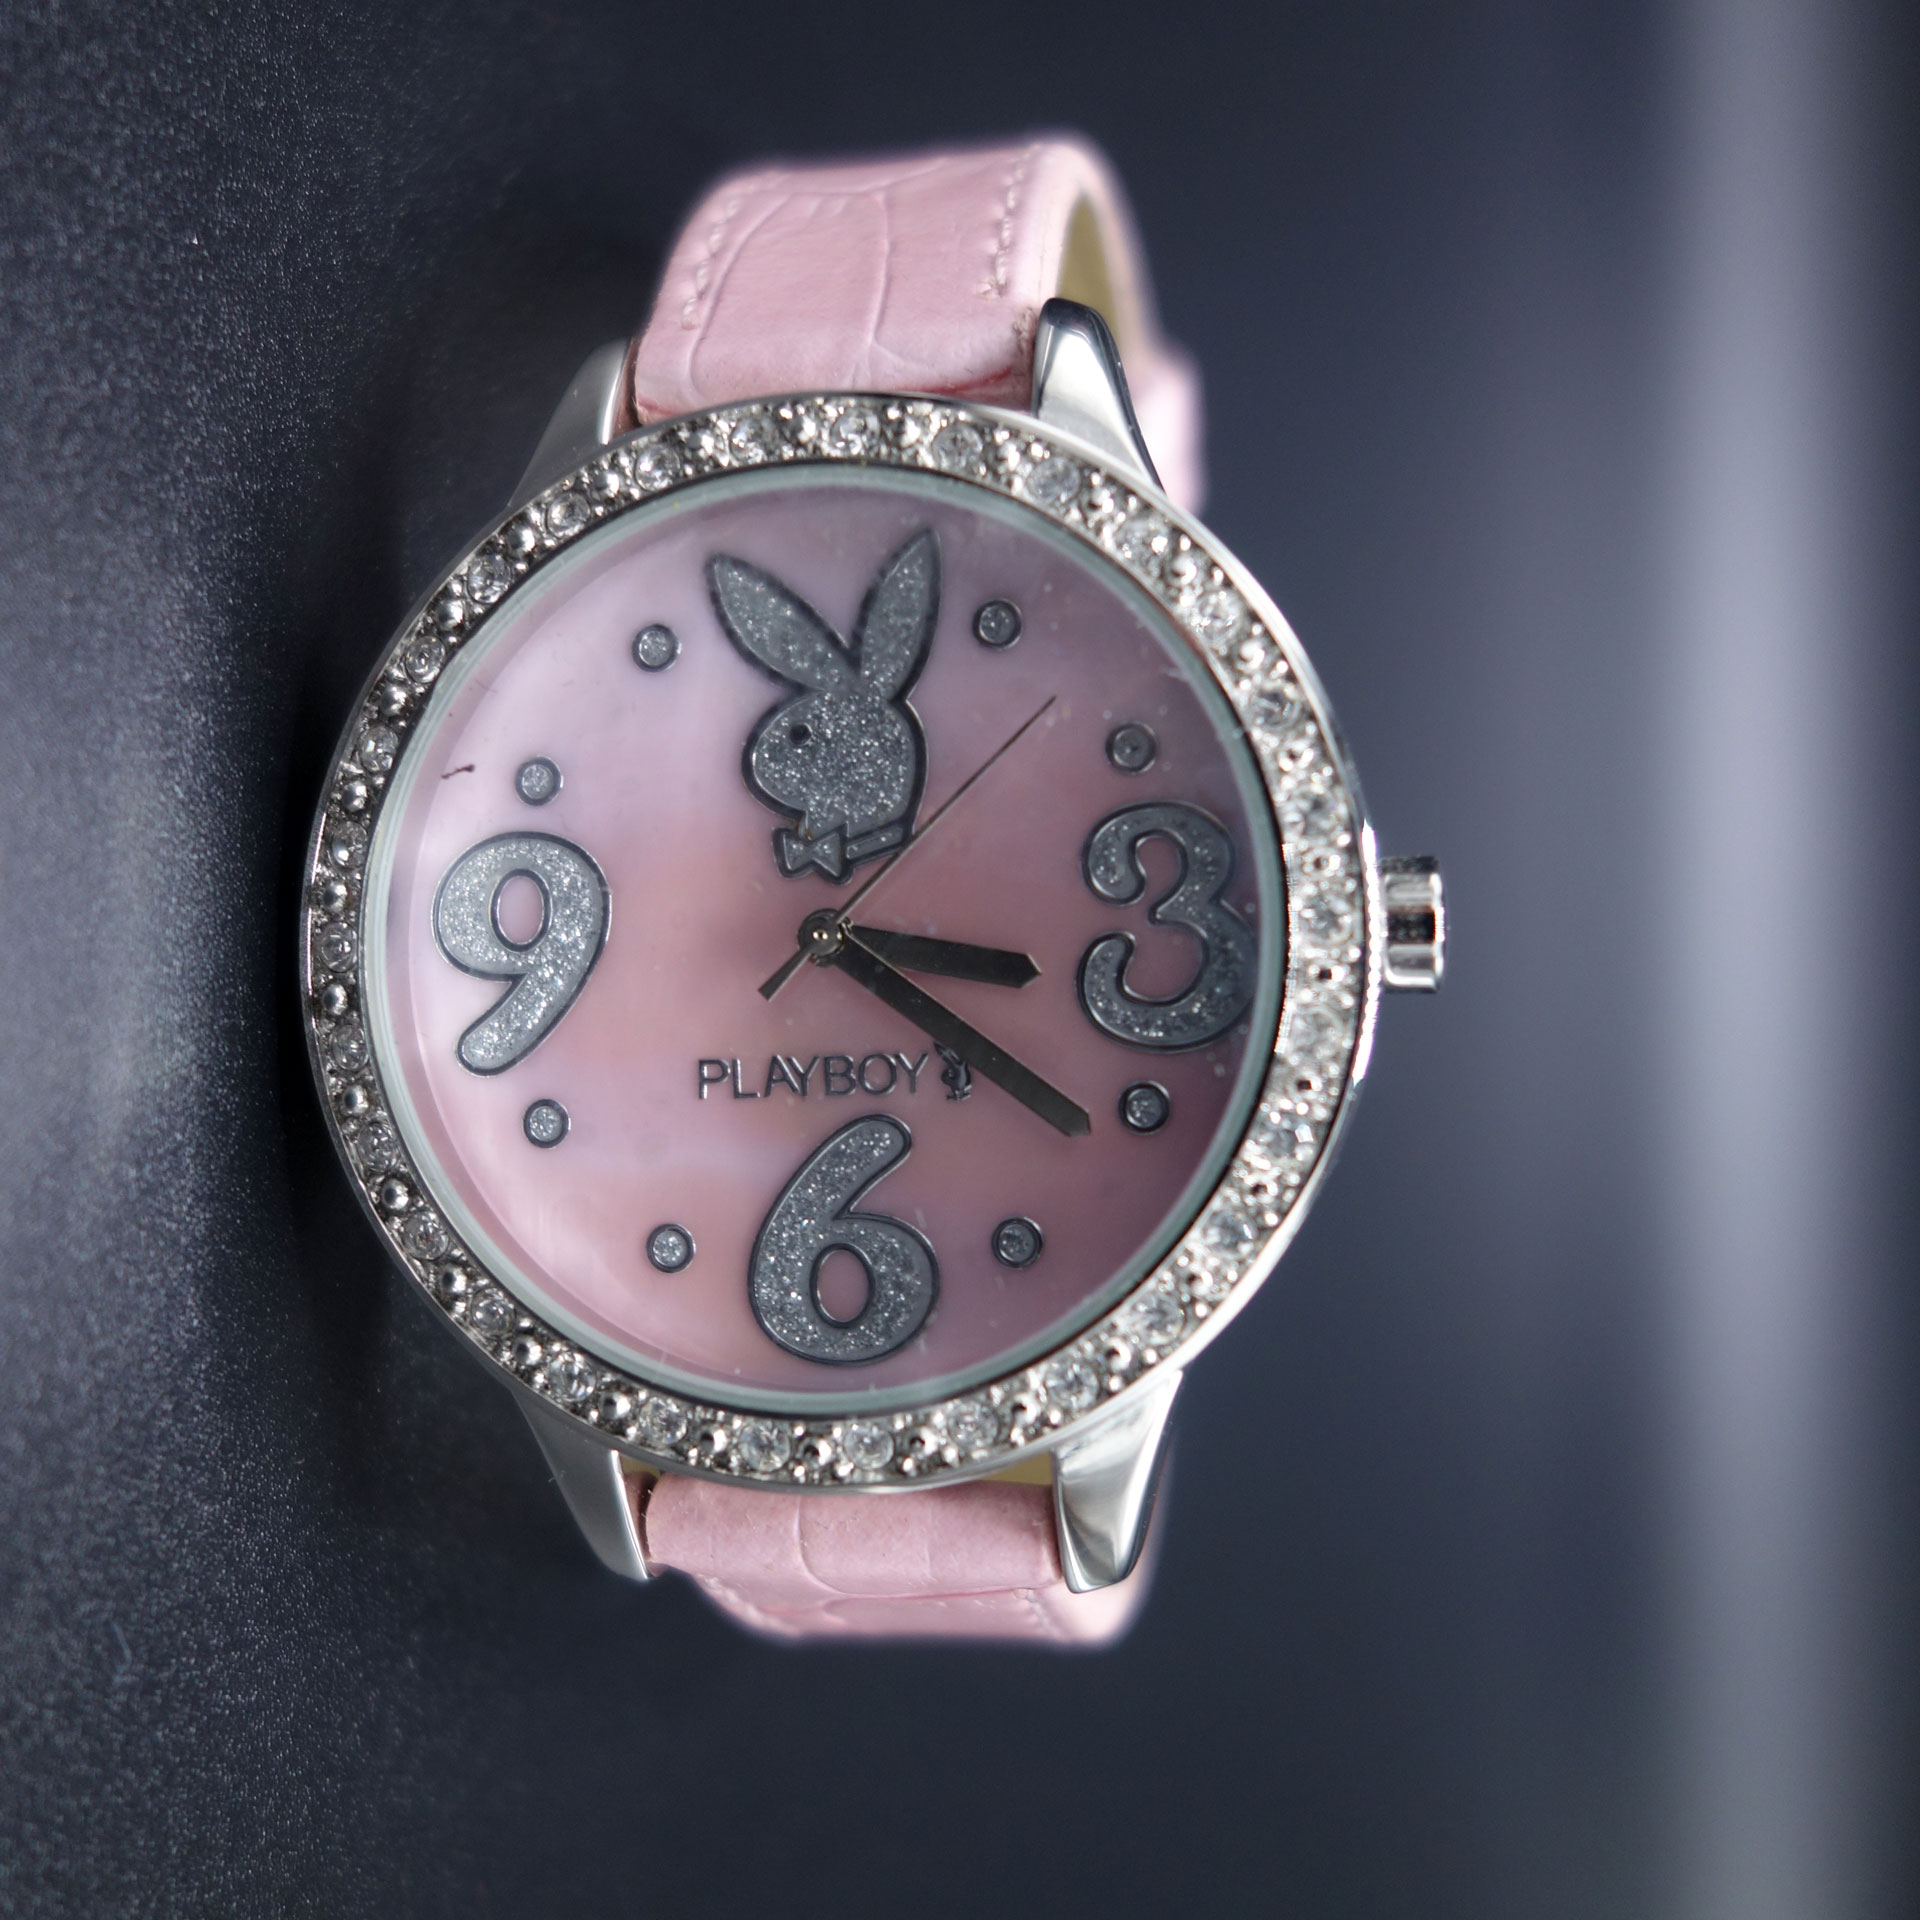 Playboy Damen Armbanduhr Pink PBH0508PKPKB